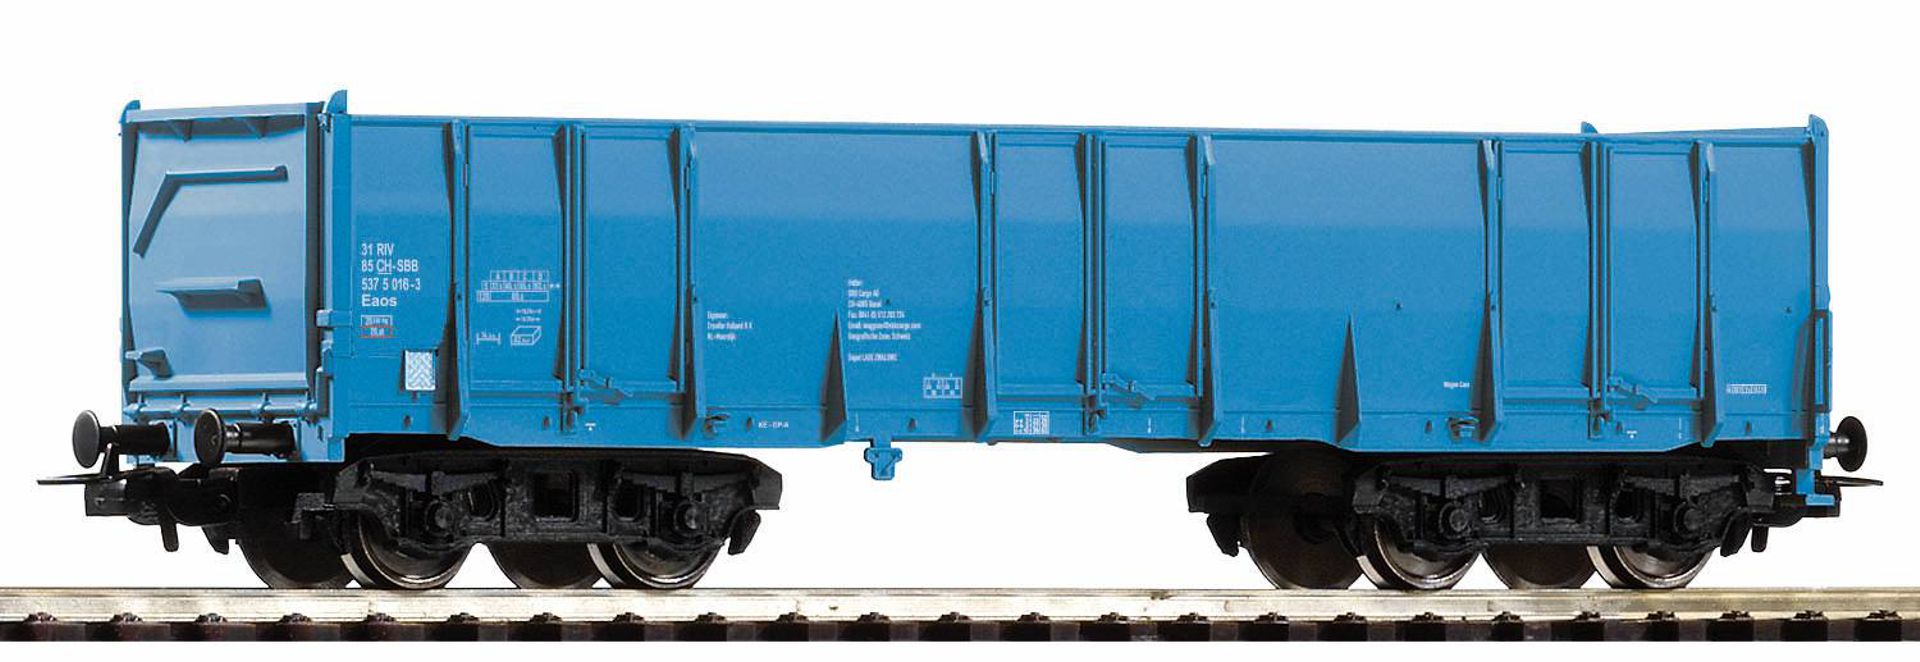 Piko 98546-B1 - Hochbordwagen Eaos, blau, SBB, Ep.VI, blau, Betriebsnummer 1